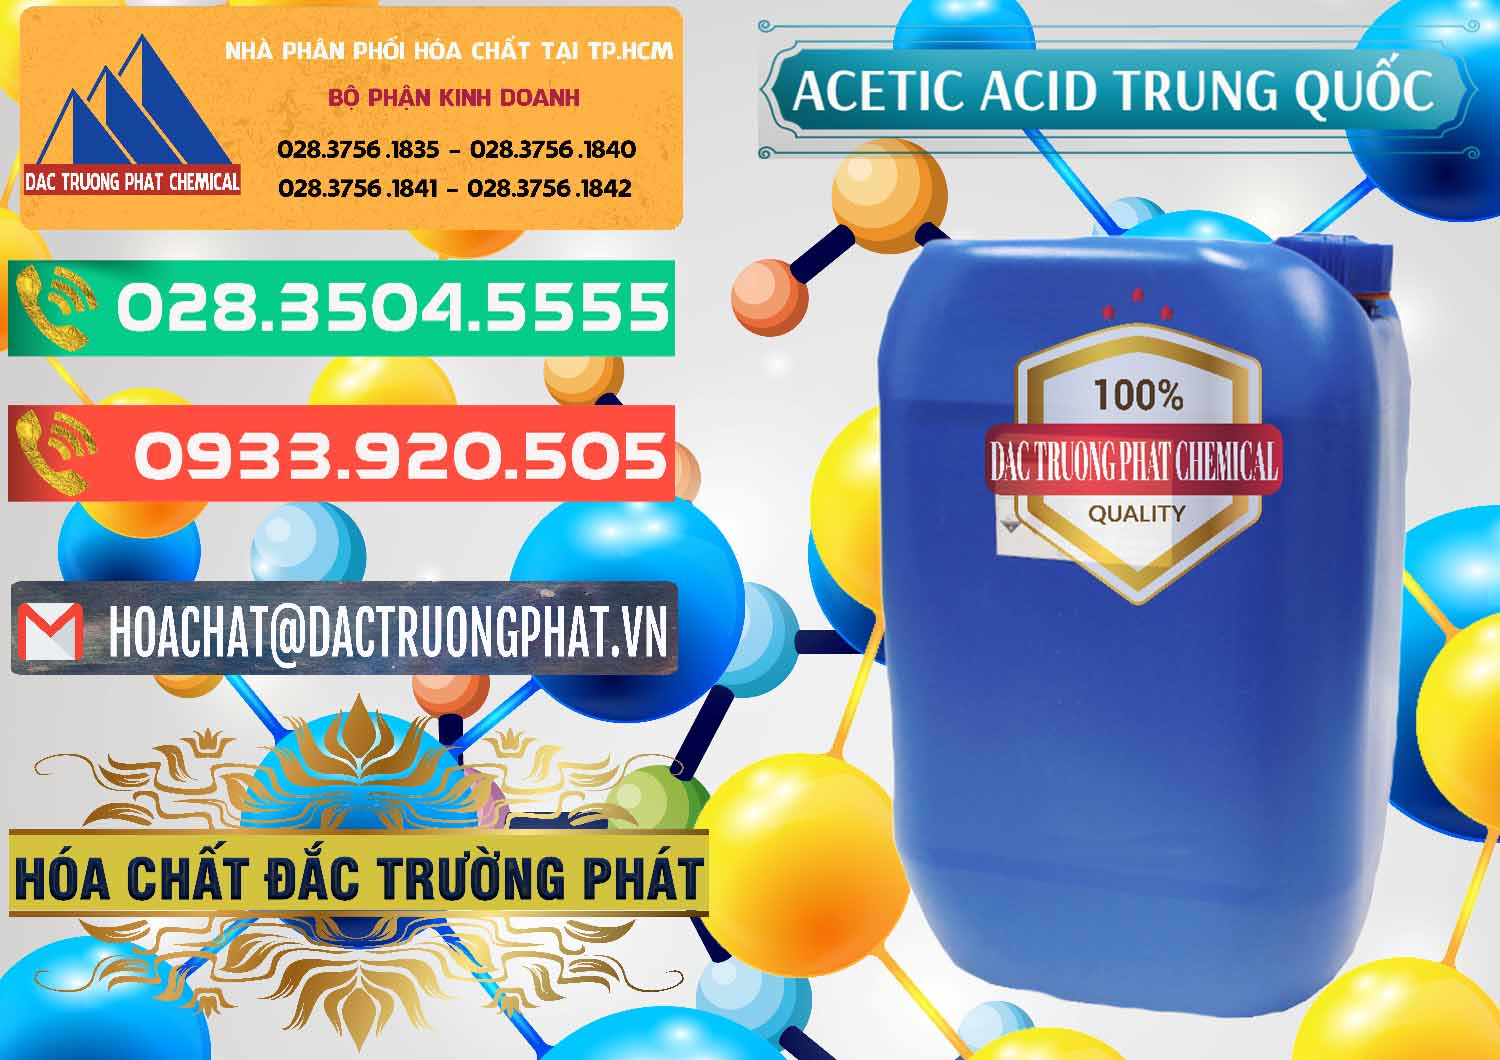 Cty chuyên bán _ cung cấp Acetic Acid – Axit Acetic Trung Quốc China - 0358 - Cty chuyên nhập khẩu _ cung cấp hóa chất tại TP.HCM - congtyhoachat.com.vn